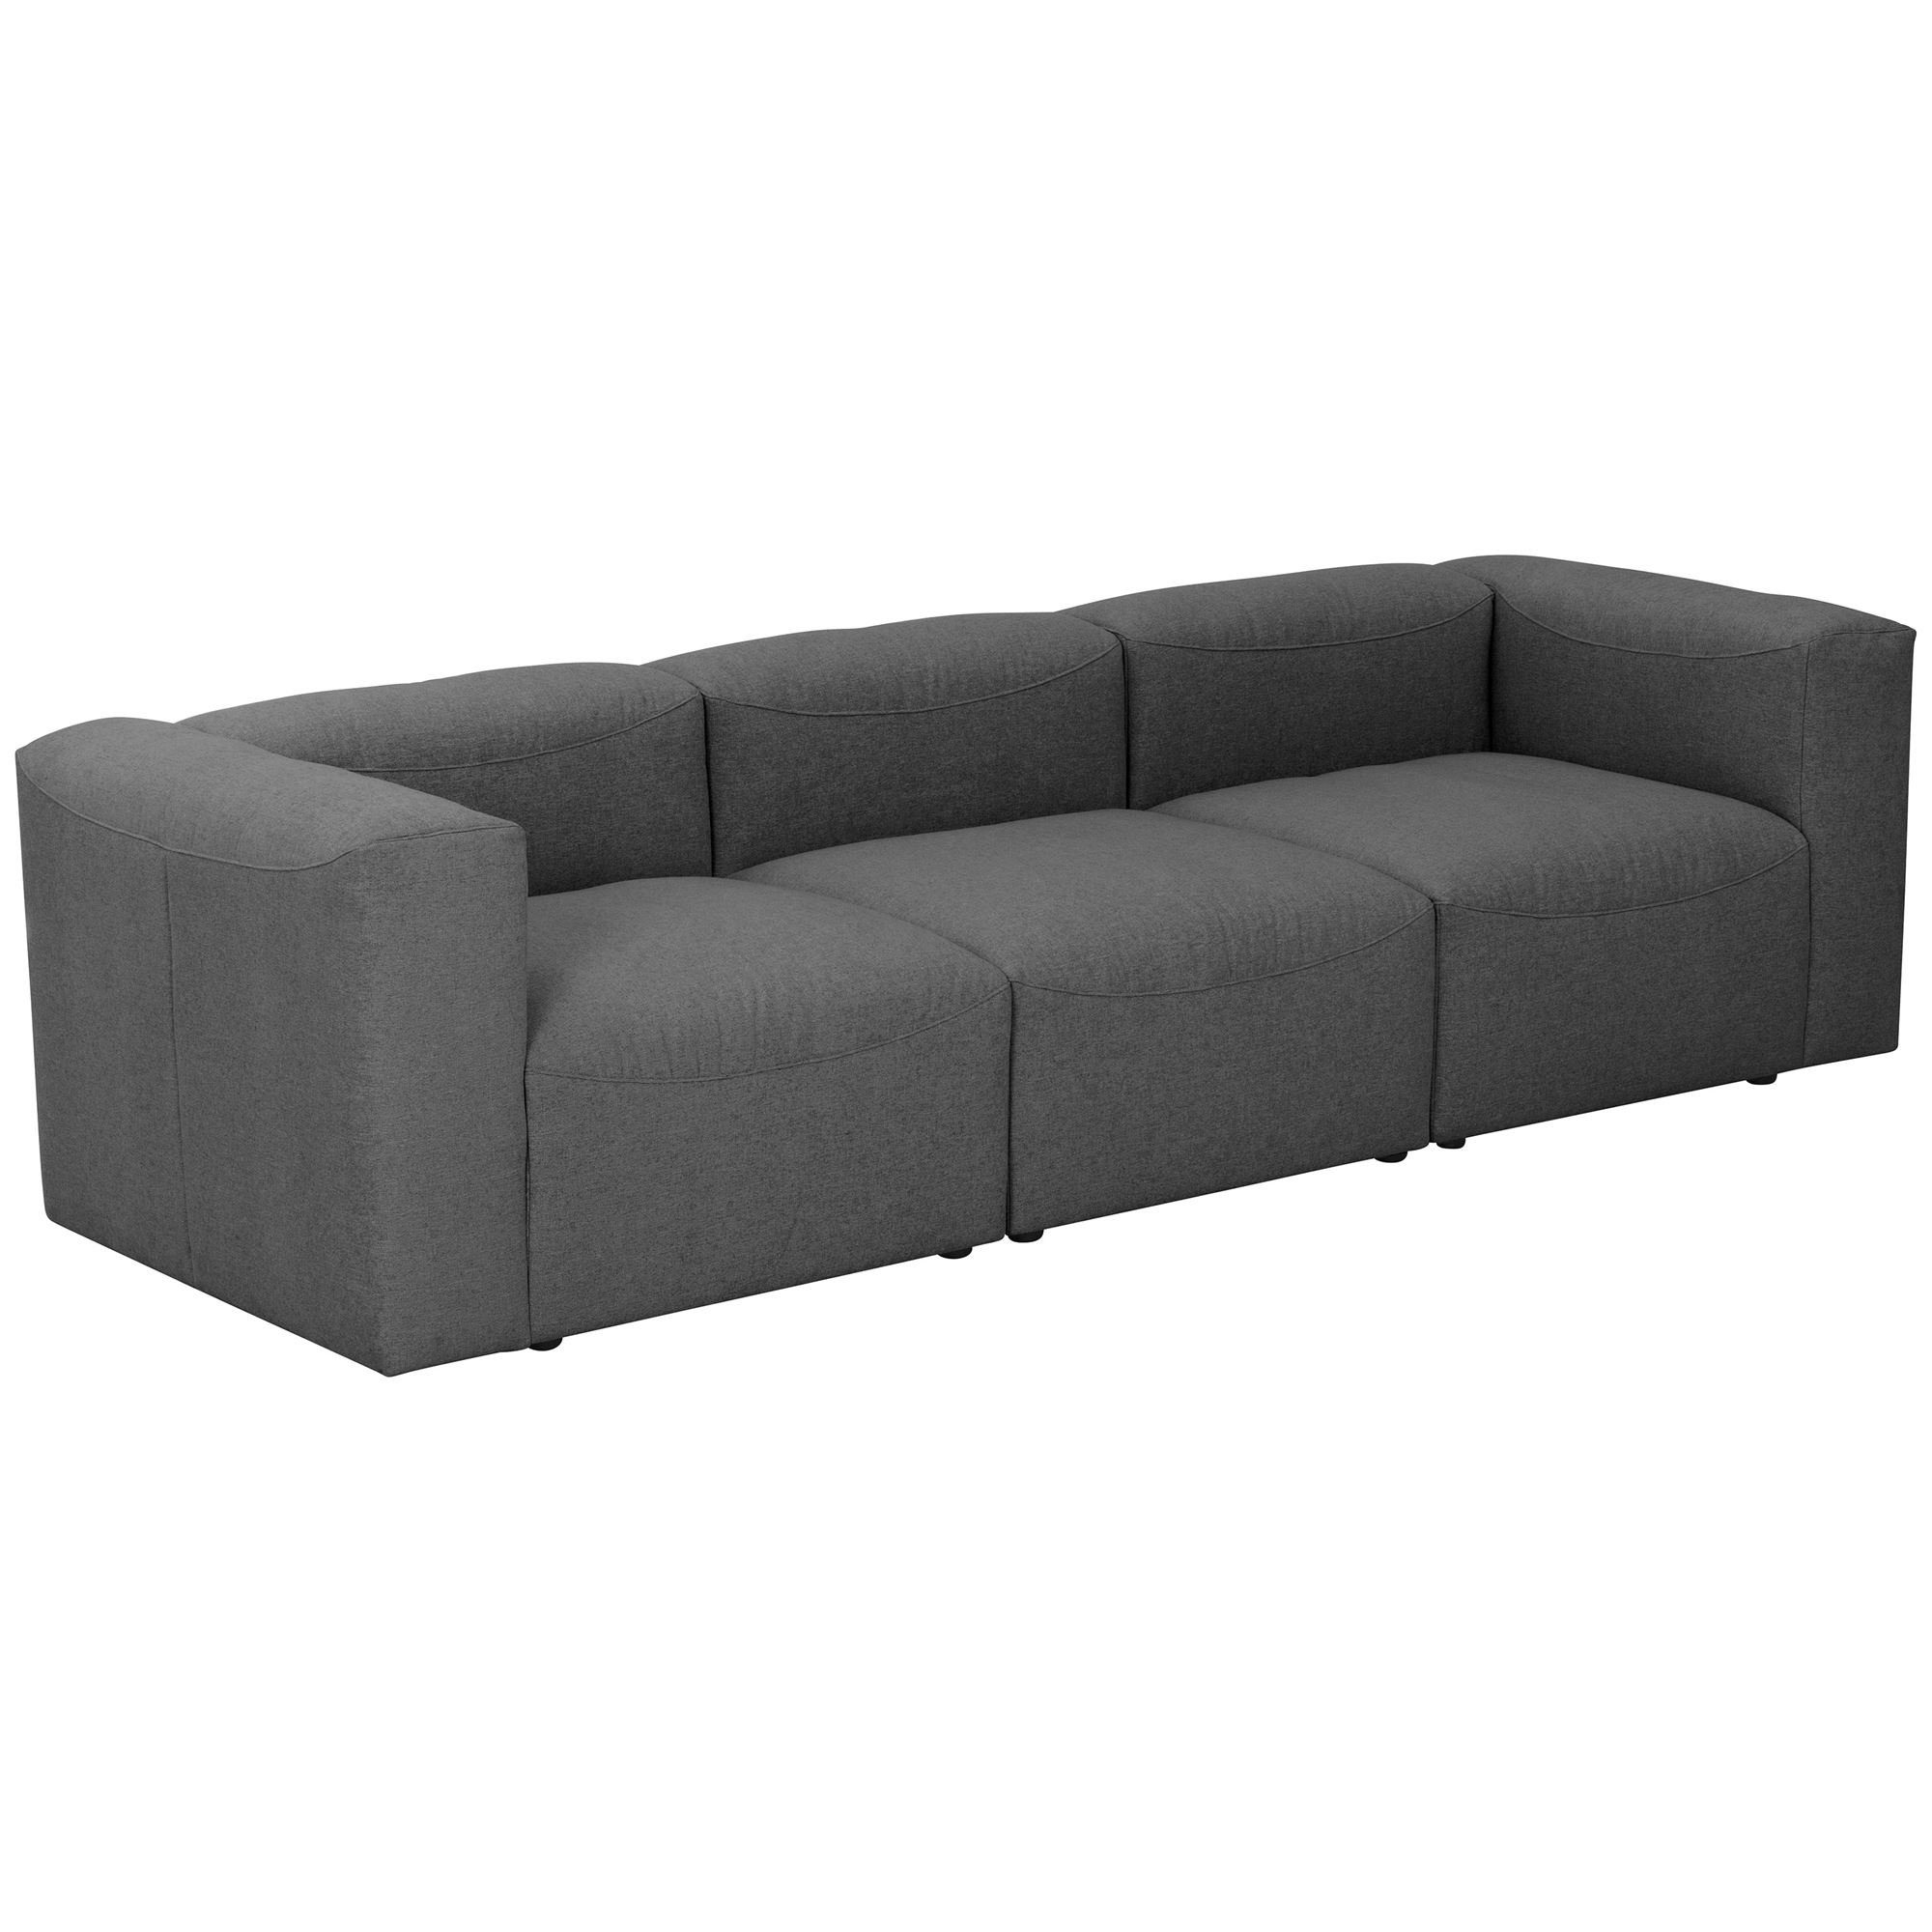 Sparpreis verarbeitet,bequemer Sofa Sitz Kessel inkl. 1 Kunststoff, Teile, Kostenlosem Kaleigh Versand aufm hochwertig Bezug 3-Sitzer Flachgewebe Sofa 58